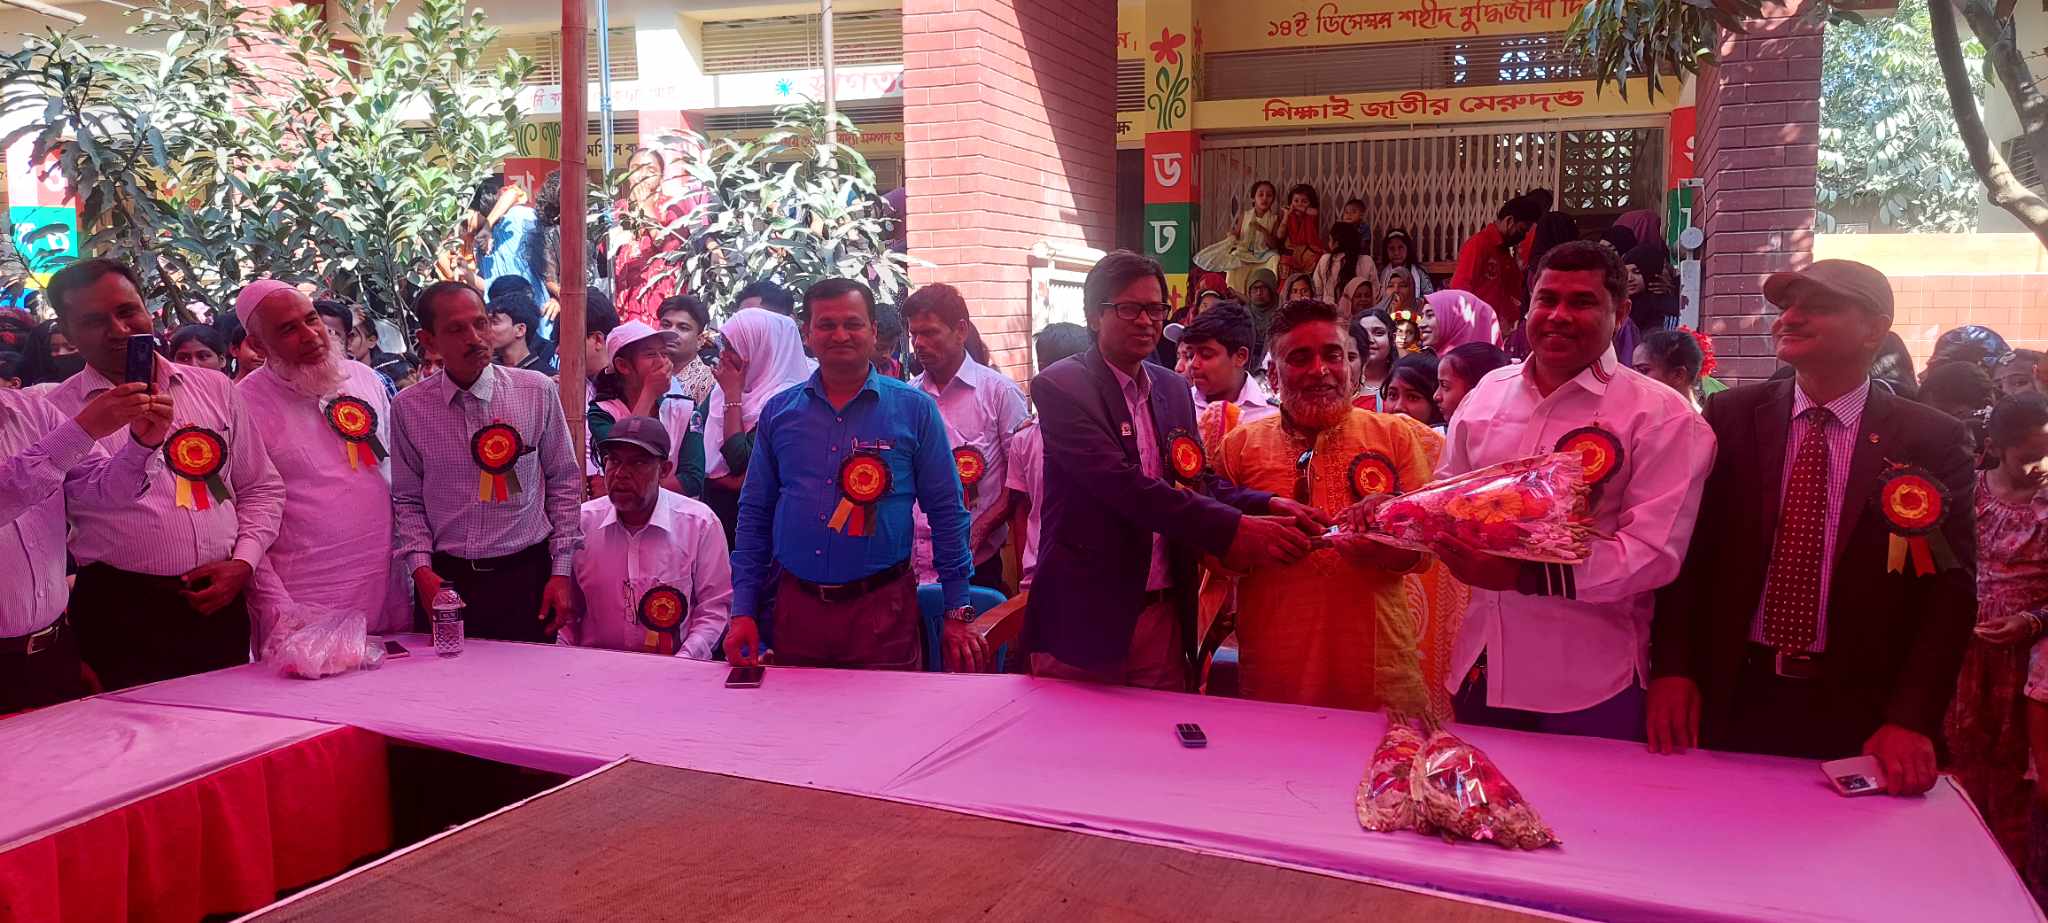 ভাঙ্গায় জাঙ্গালপাশা হাজী আঃ মজিদ একাডেমীর বার্ষিক ক্রিয়া প্রতিযোগিতা অনুষ্ঠিত